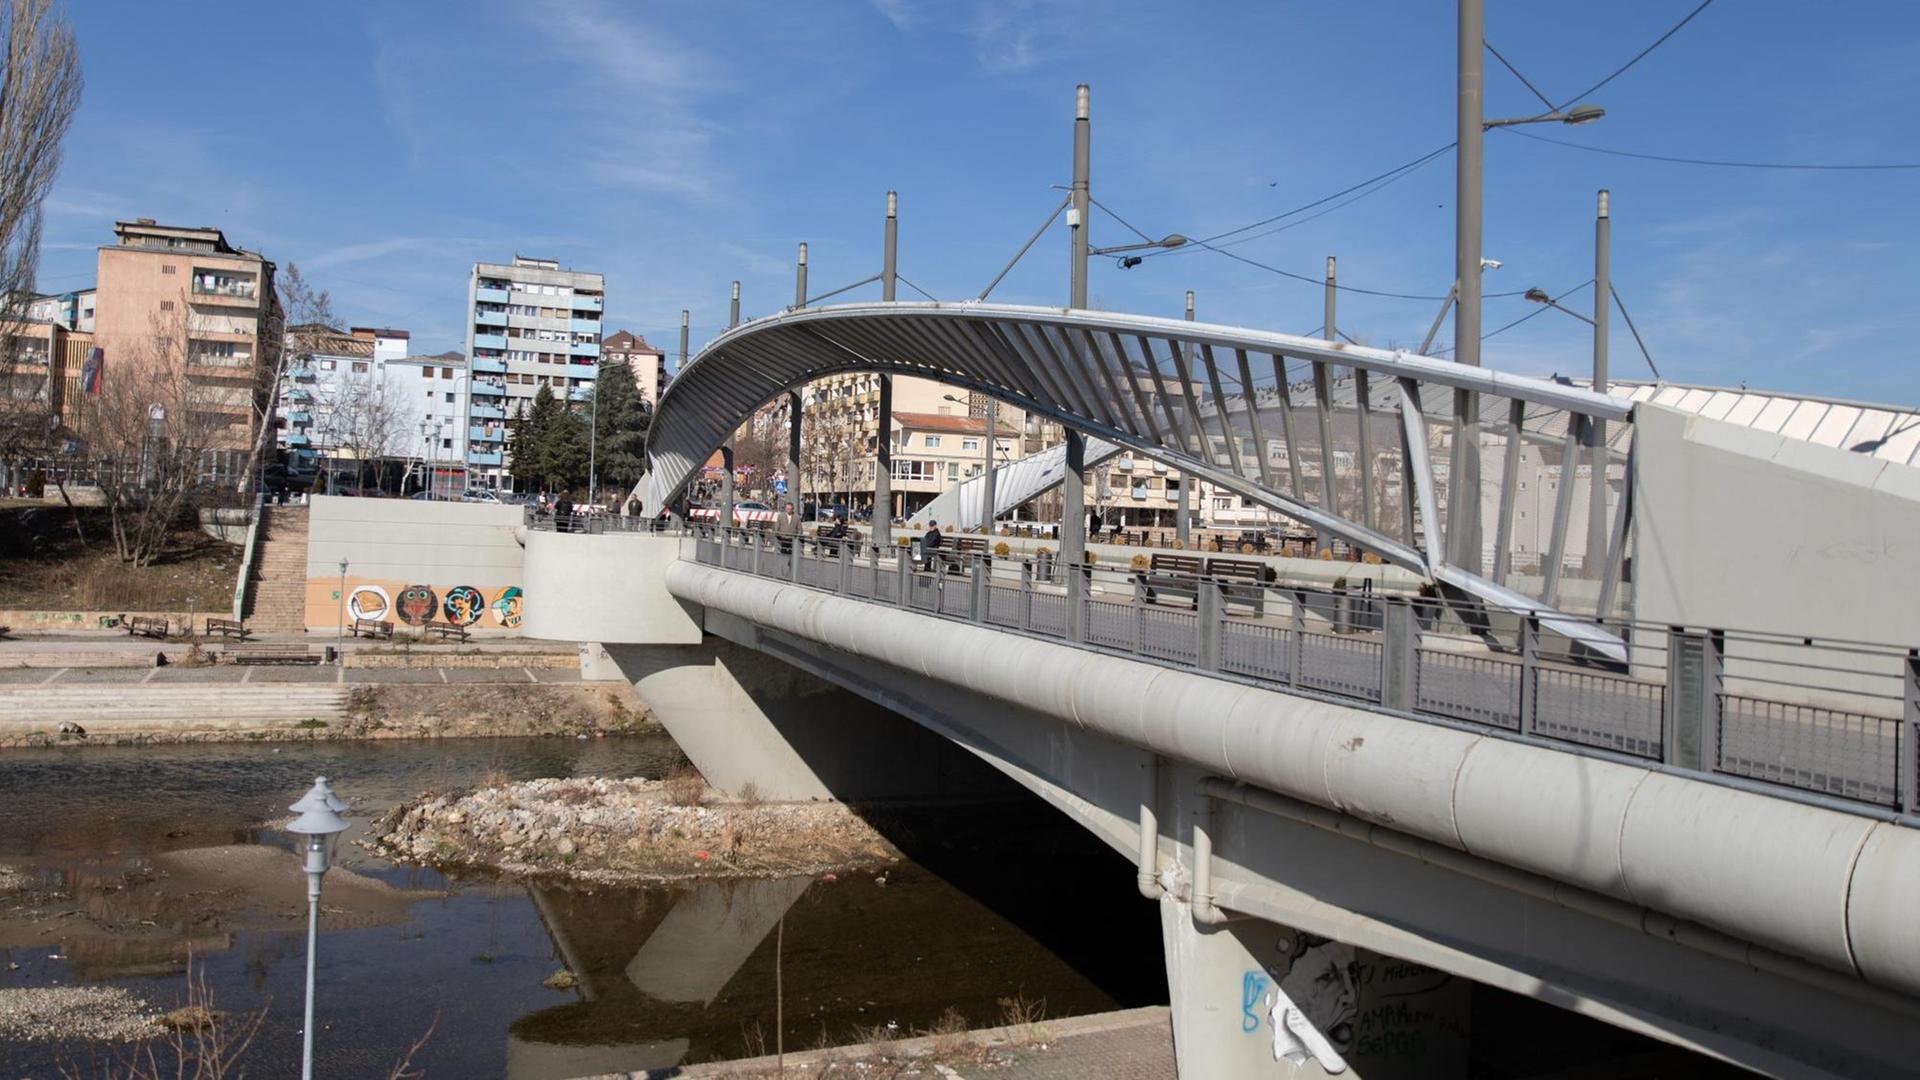 Die Stadt Mitrovica im Kosovo. Eine ehemals weiße Brücke verbindet den Norden mit dem Süden und ist ein Symbol für den Konflikt zwischen Serben und Albanern.